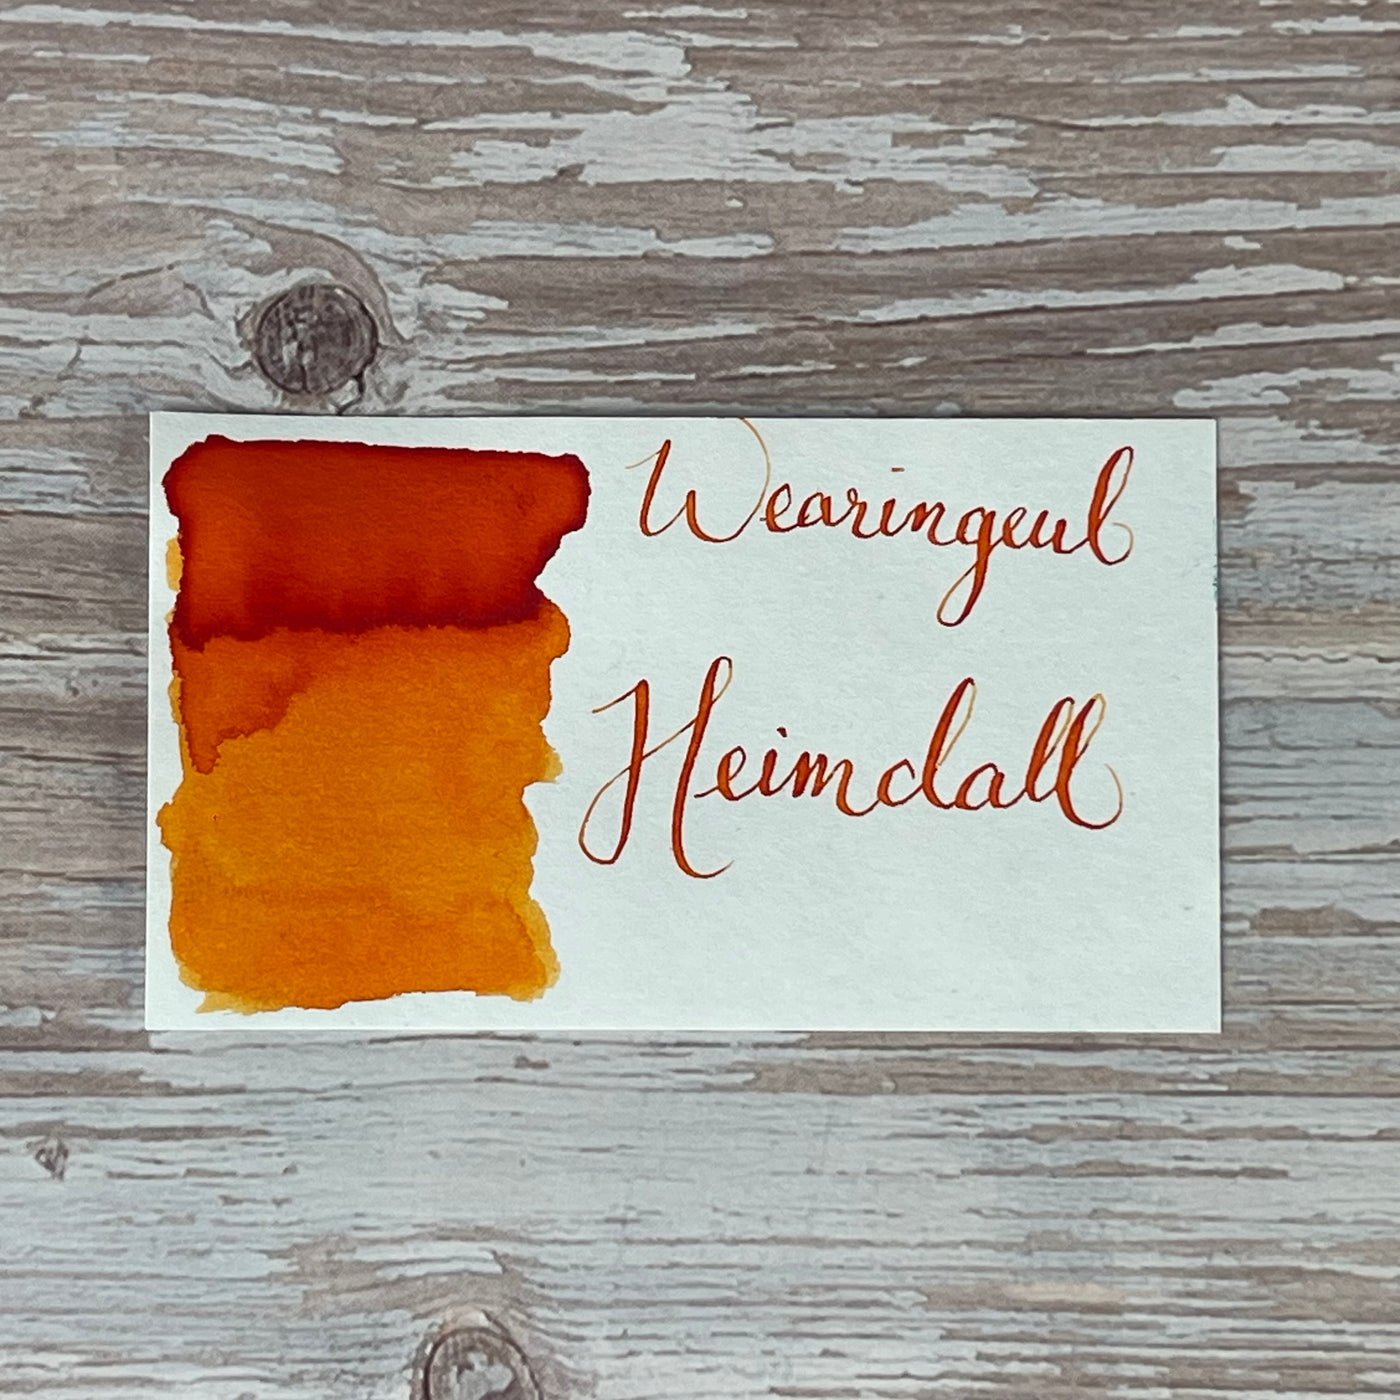 Wearingeul Heimdall - 30ml Bottled Ink